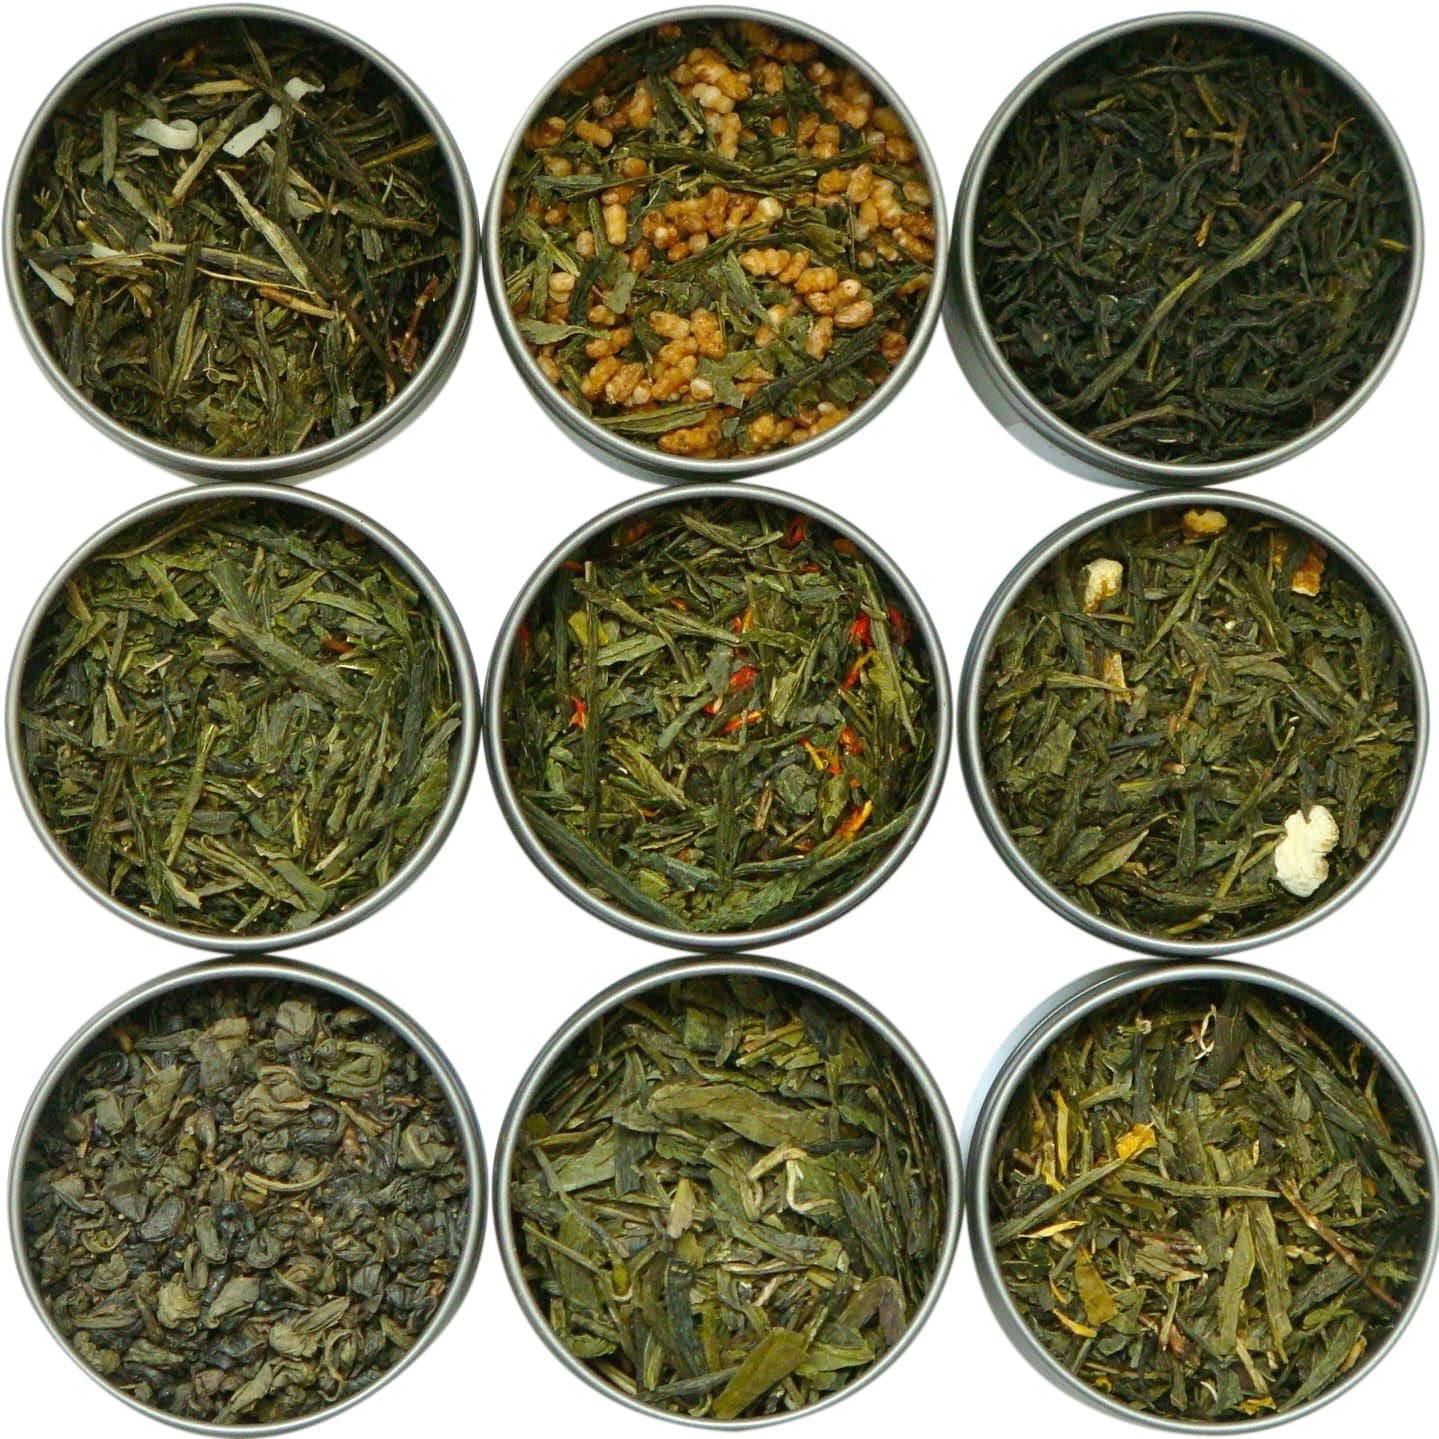 Heavenly Tea Leaves Assorted Green Tea Sampler Set, 9 Loose Leaf Green ...